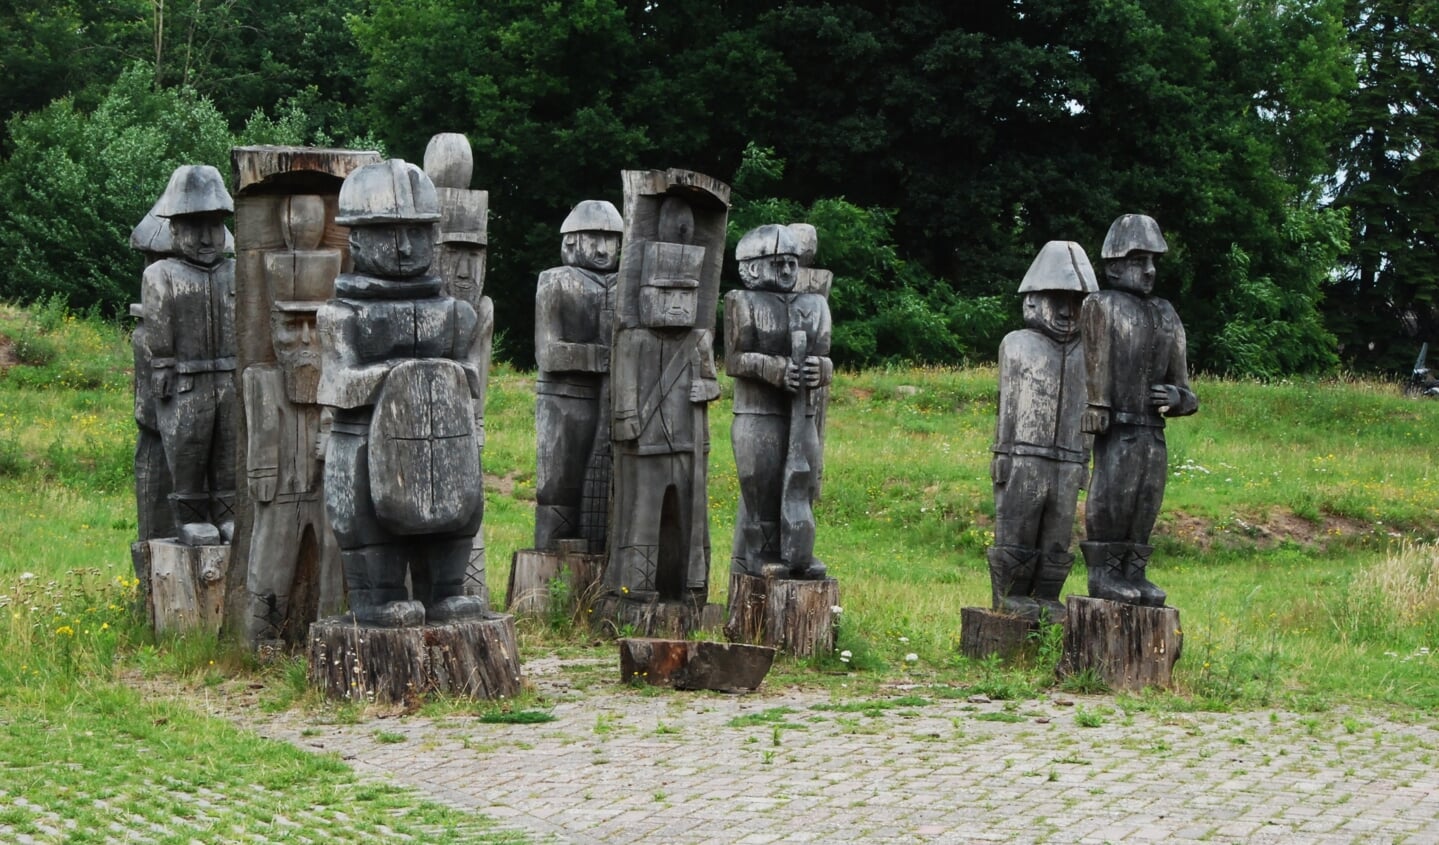 De houten soldaten op het Fort aan de Buursteeg in hun uitrusting uit vroeger tijden.